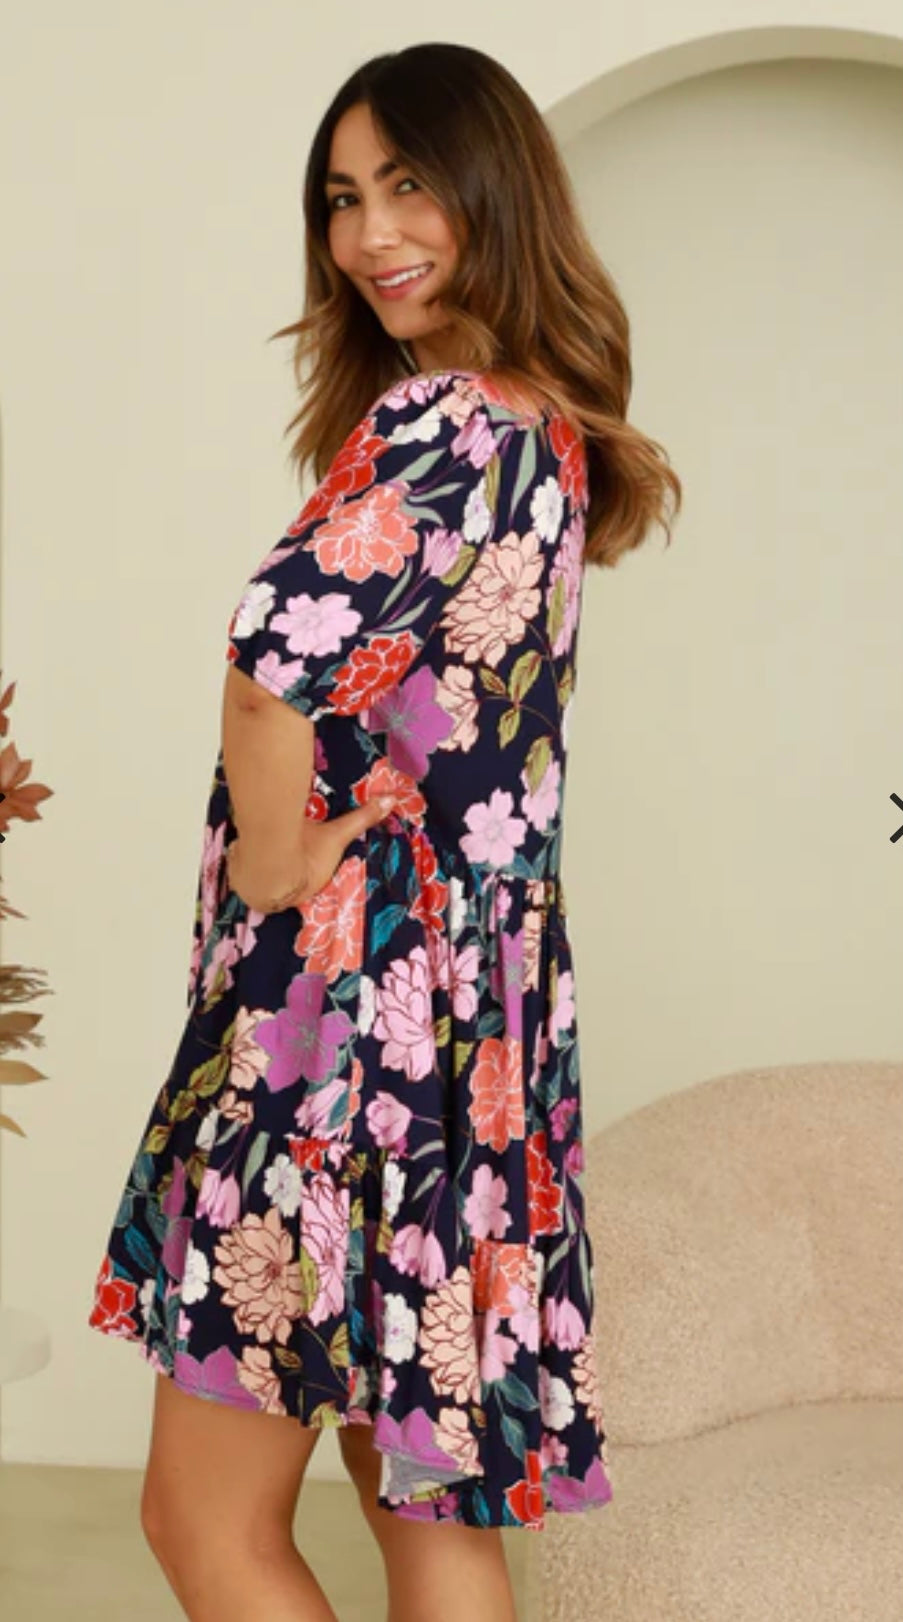 Cleo Short Floral Spring-Summer Dress